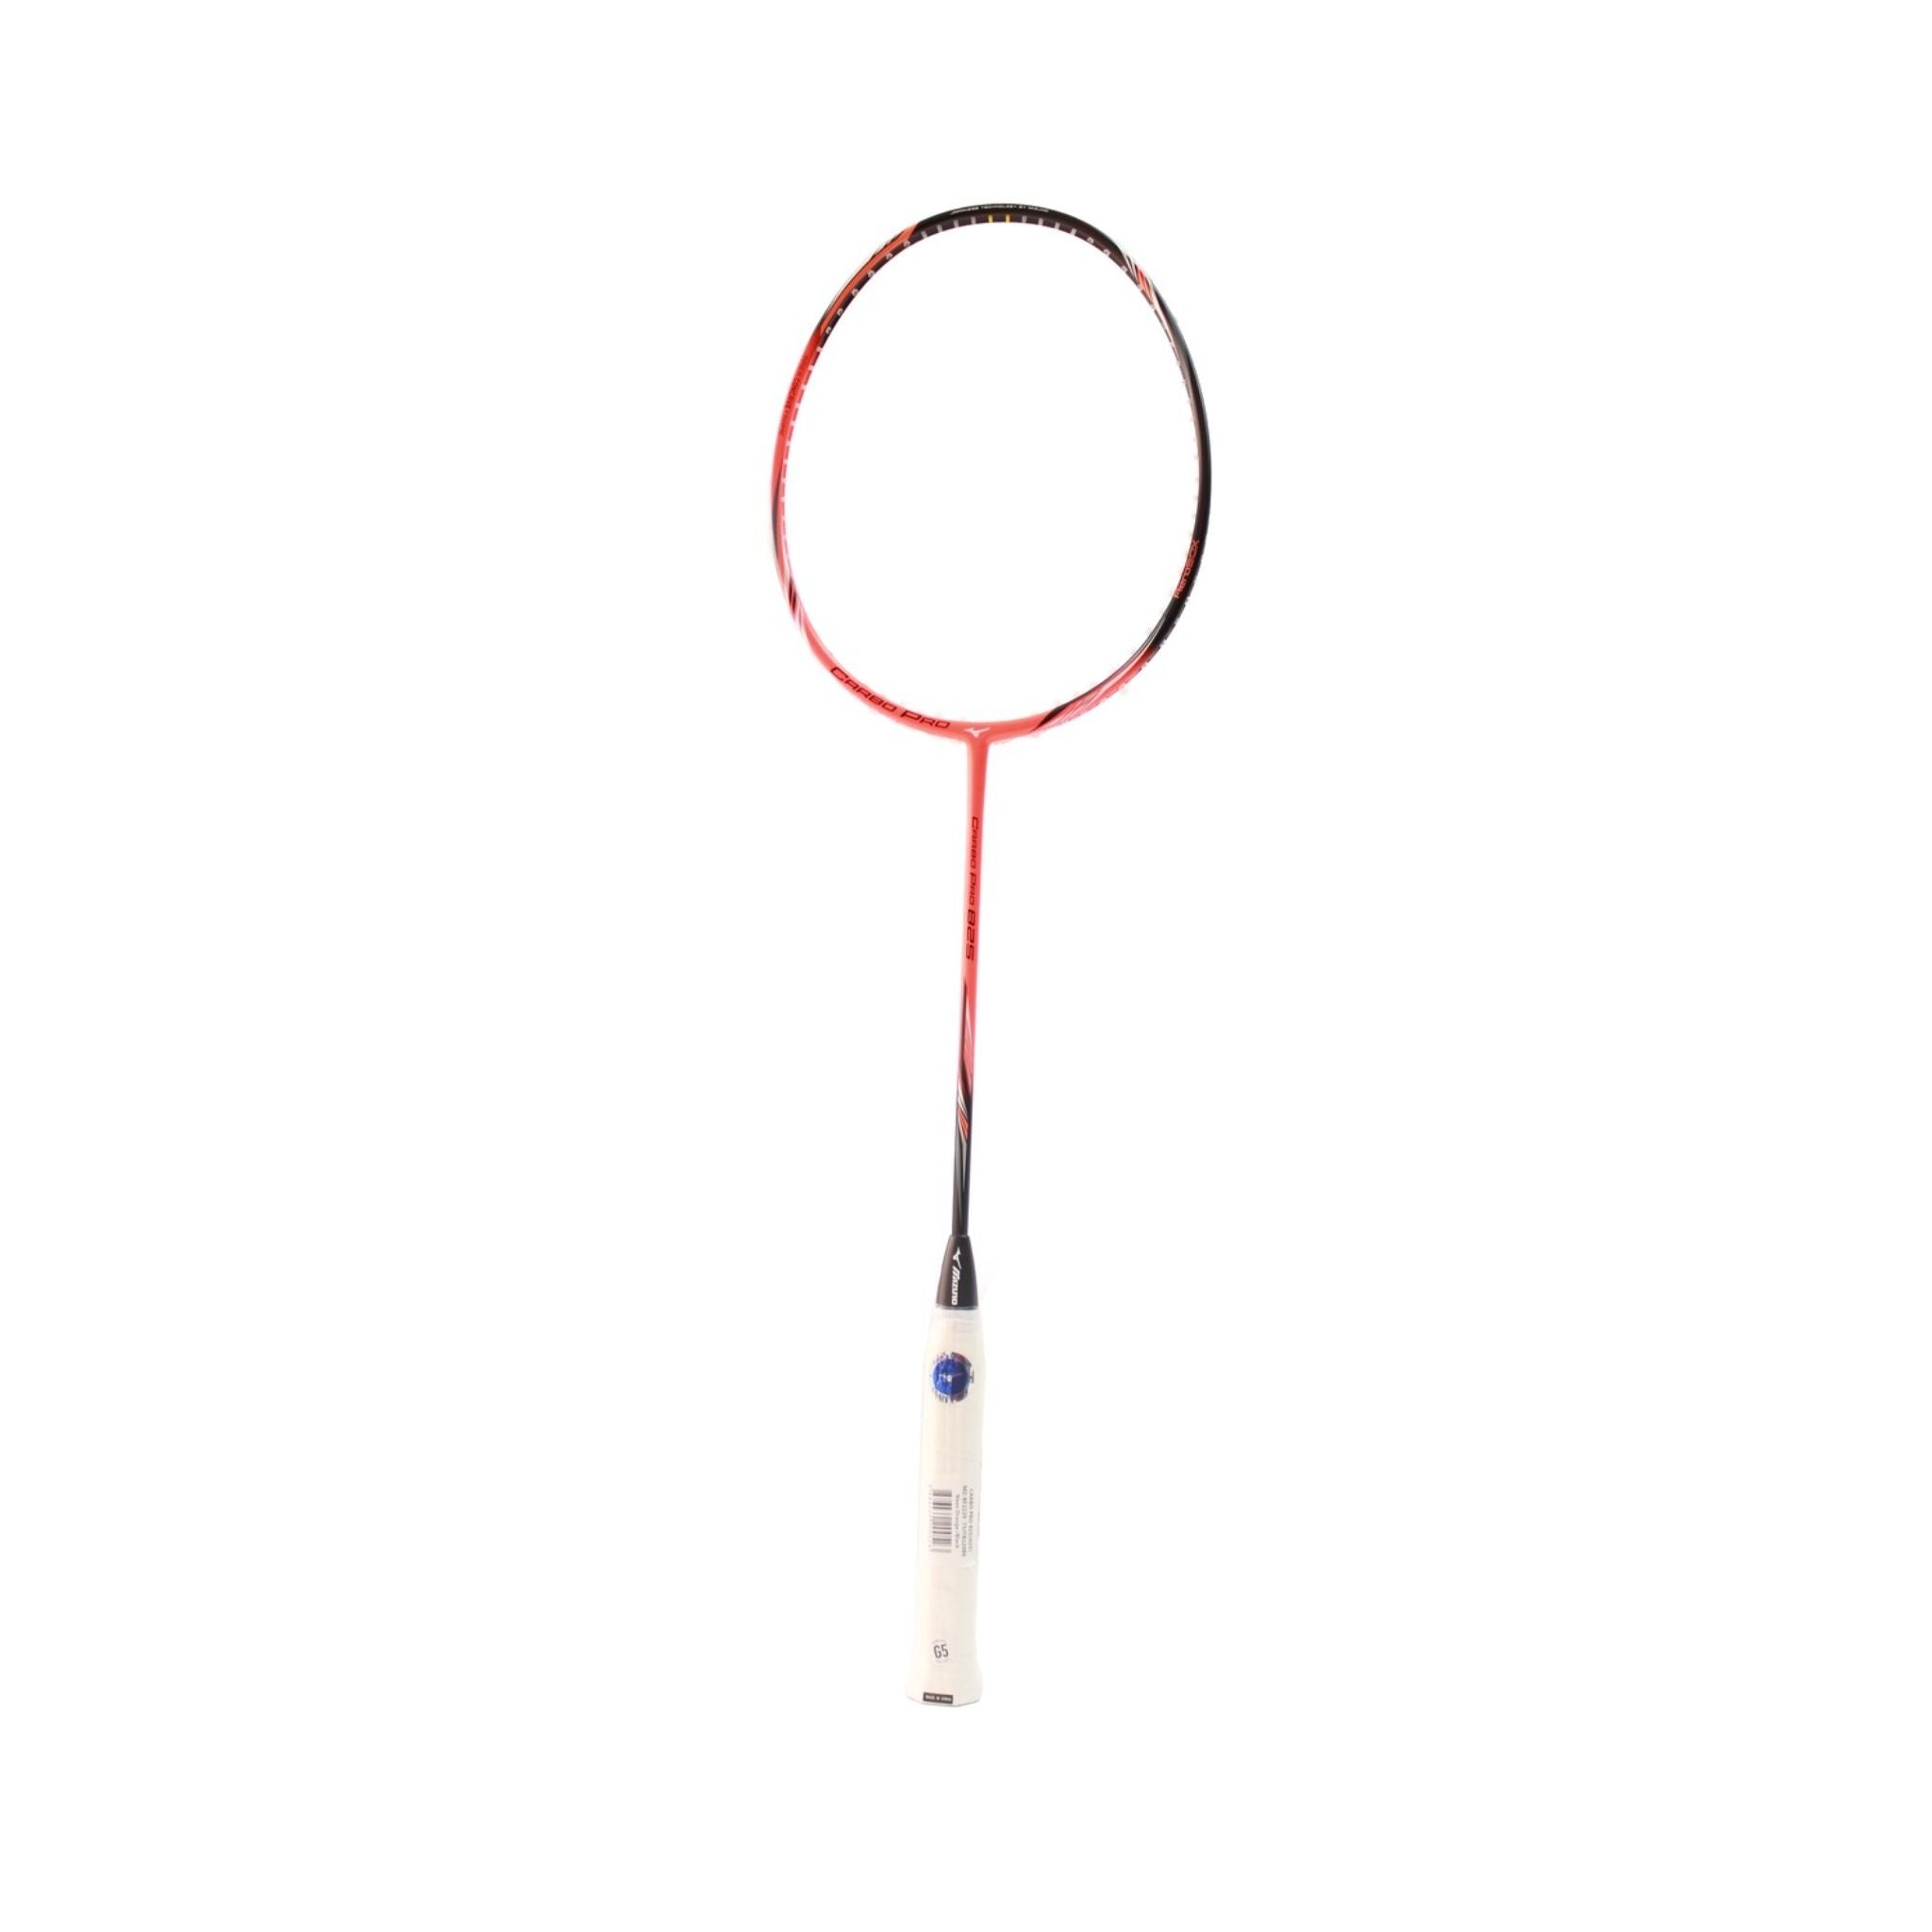 Mizuno Carbo Pro 825 Badminton Racket